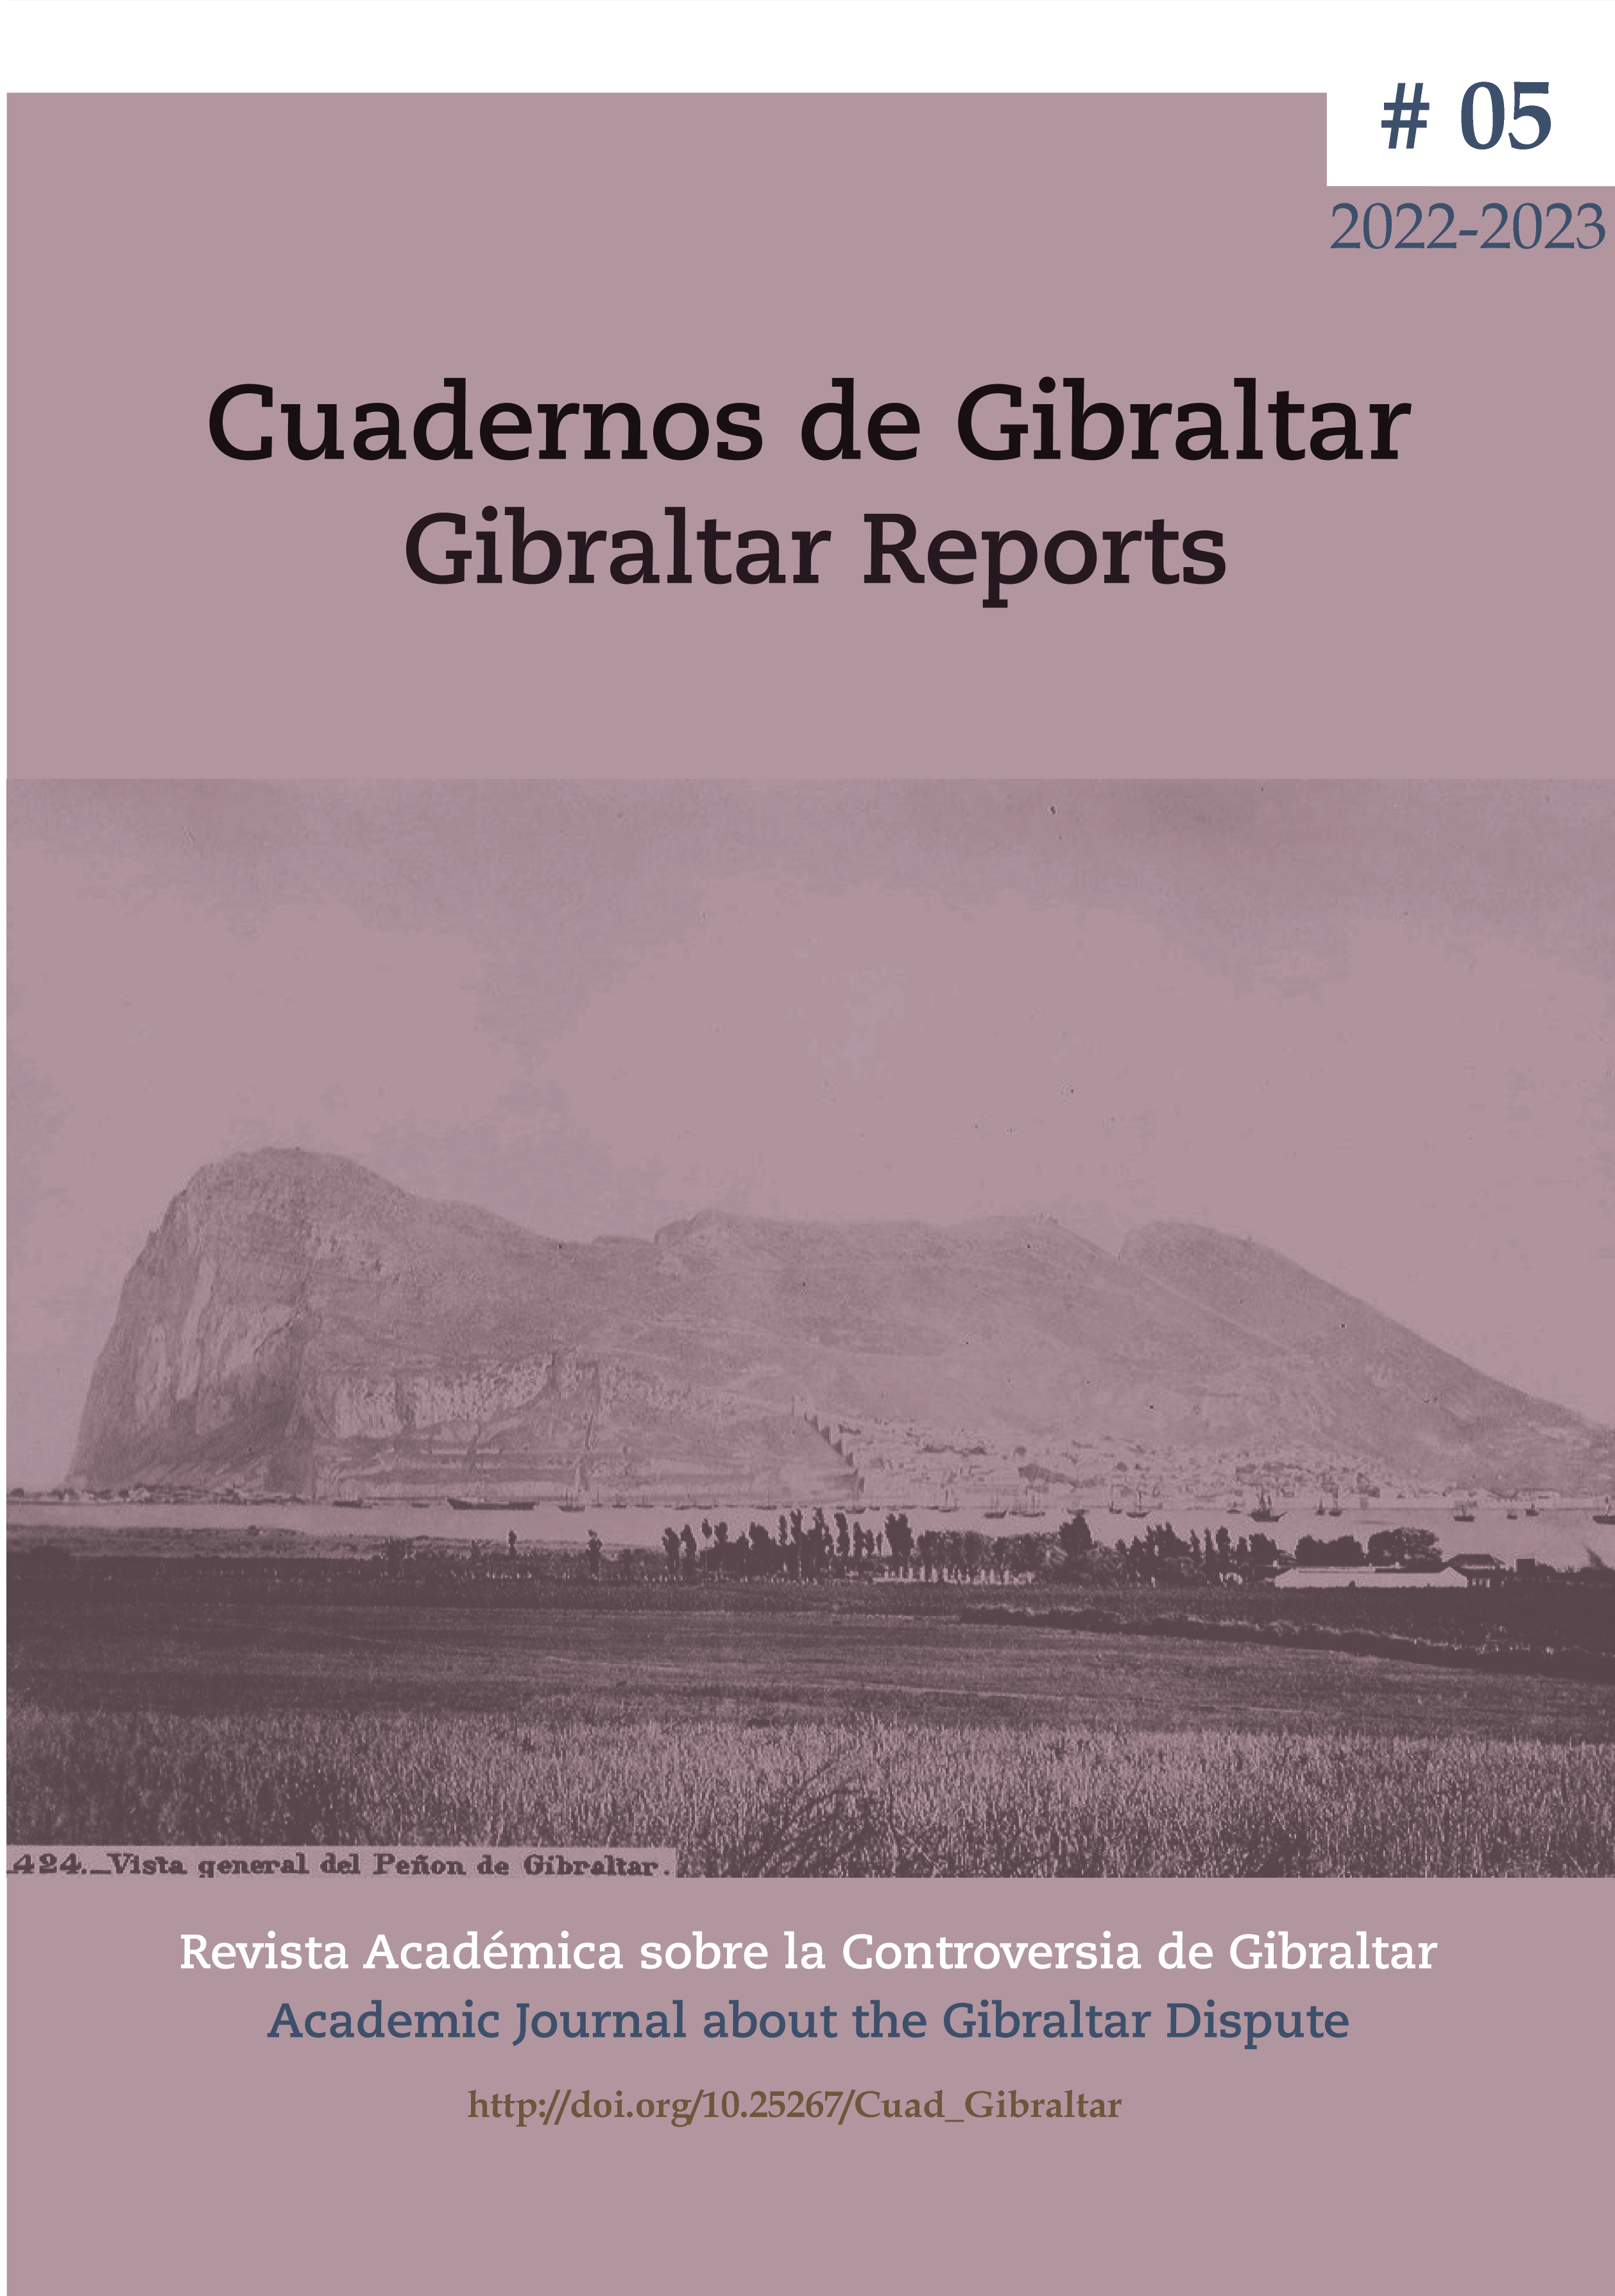 Cuadernos de Gibraltar – Gibraltar Reports